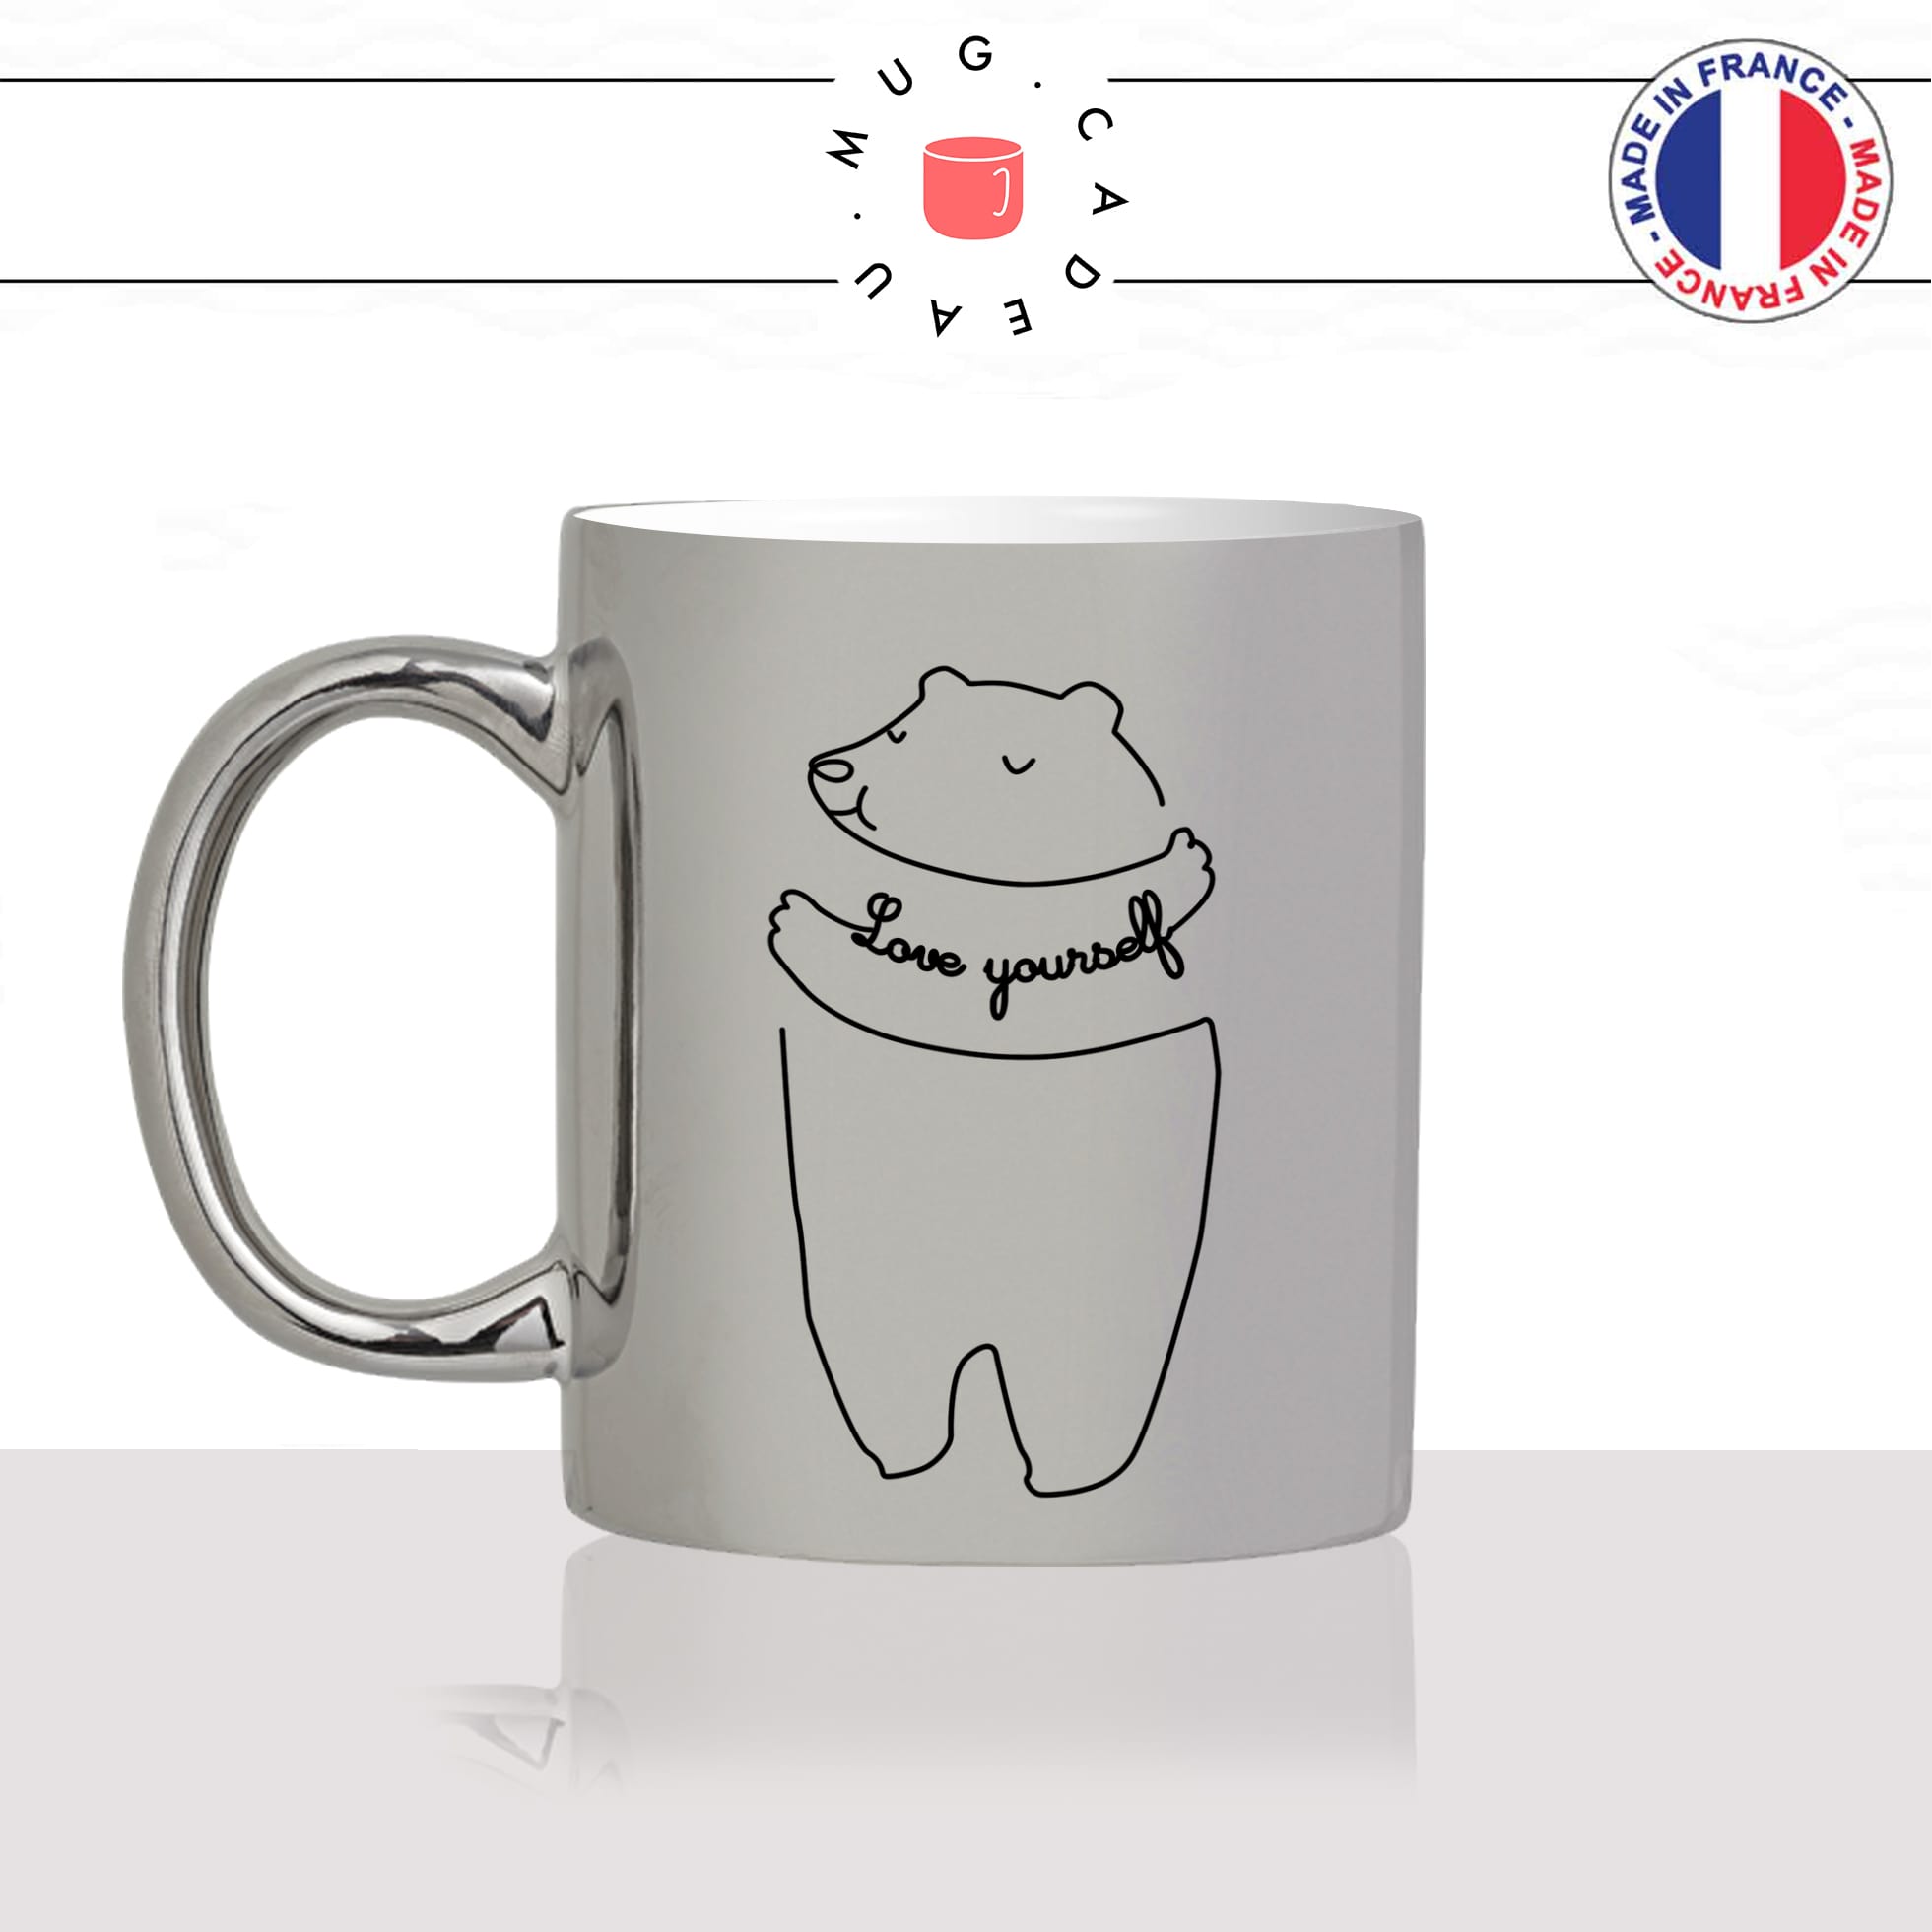 mug-tasse-silver-argenté-argent-ours-love-yourself-dessin-drole-mignon-animal-noir-fun-café-thé-idée-cadeau-original-personnalisé-min